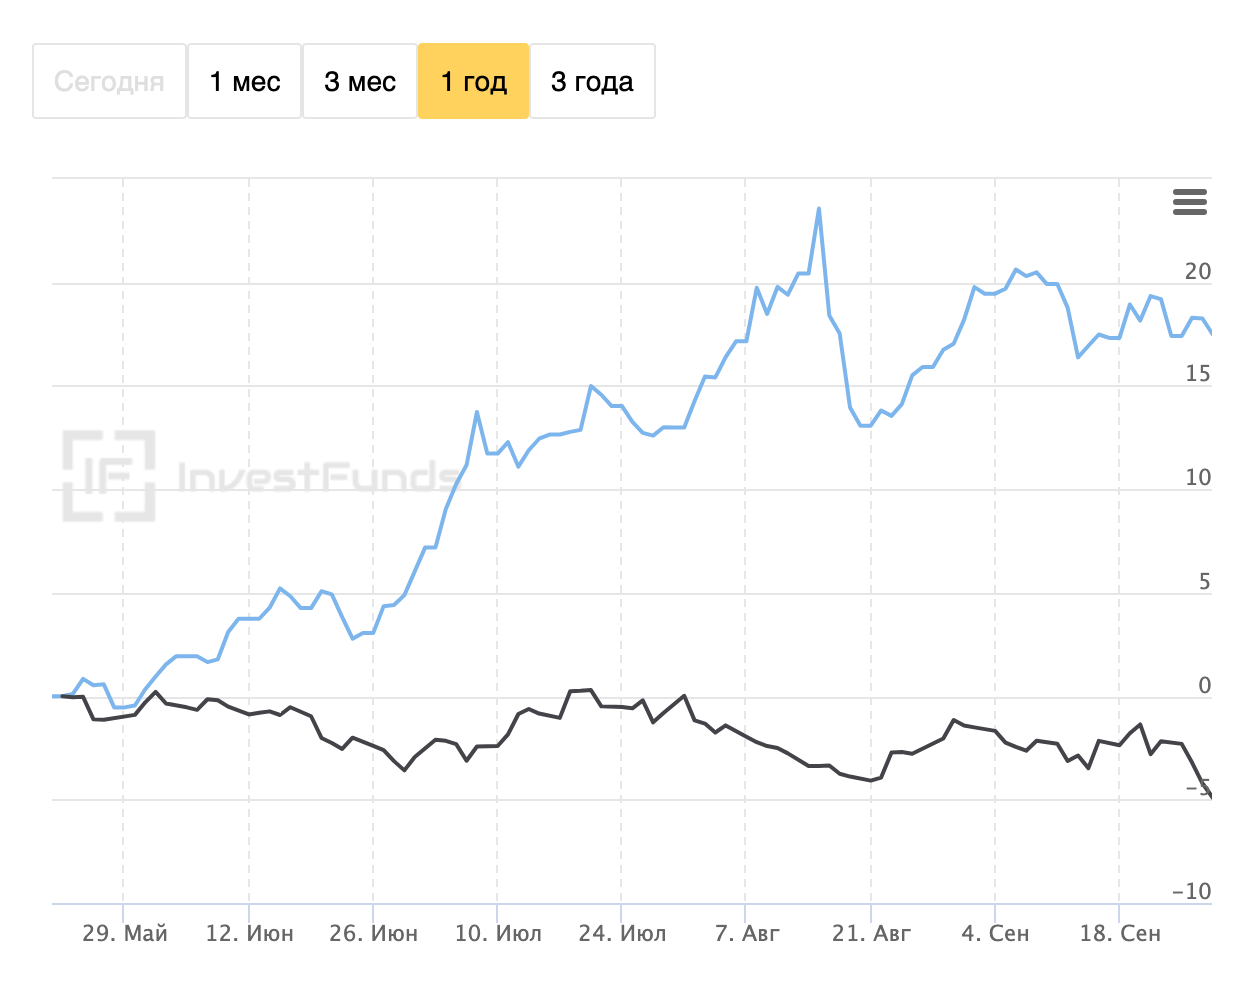 Сравнение графиков цен на золото: цены в рублях растут (синий график цены ЦБ), а долларах снижаются (черный график цены LBMA). Значит, в этот момент вложения в ОМС росли не потому, что дорожало золото, а из⁠-⁠за девальвации рубля